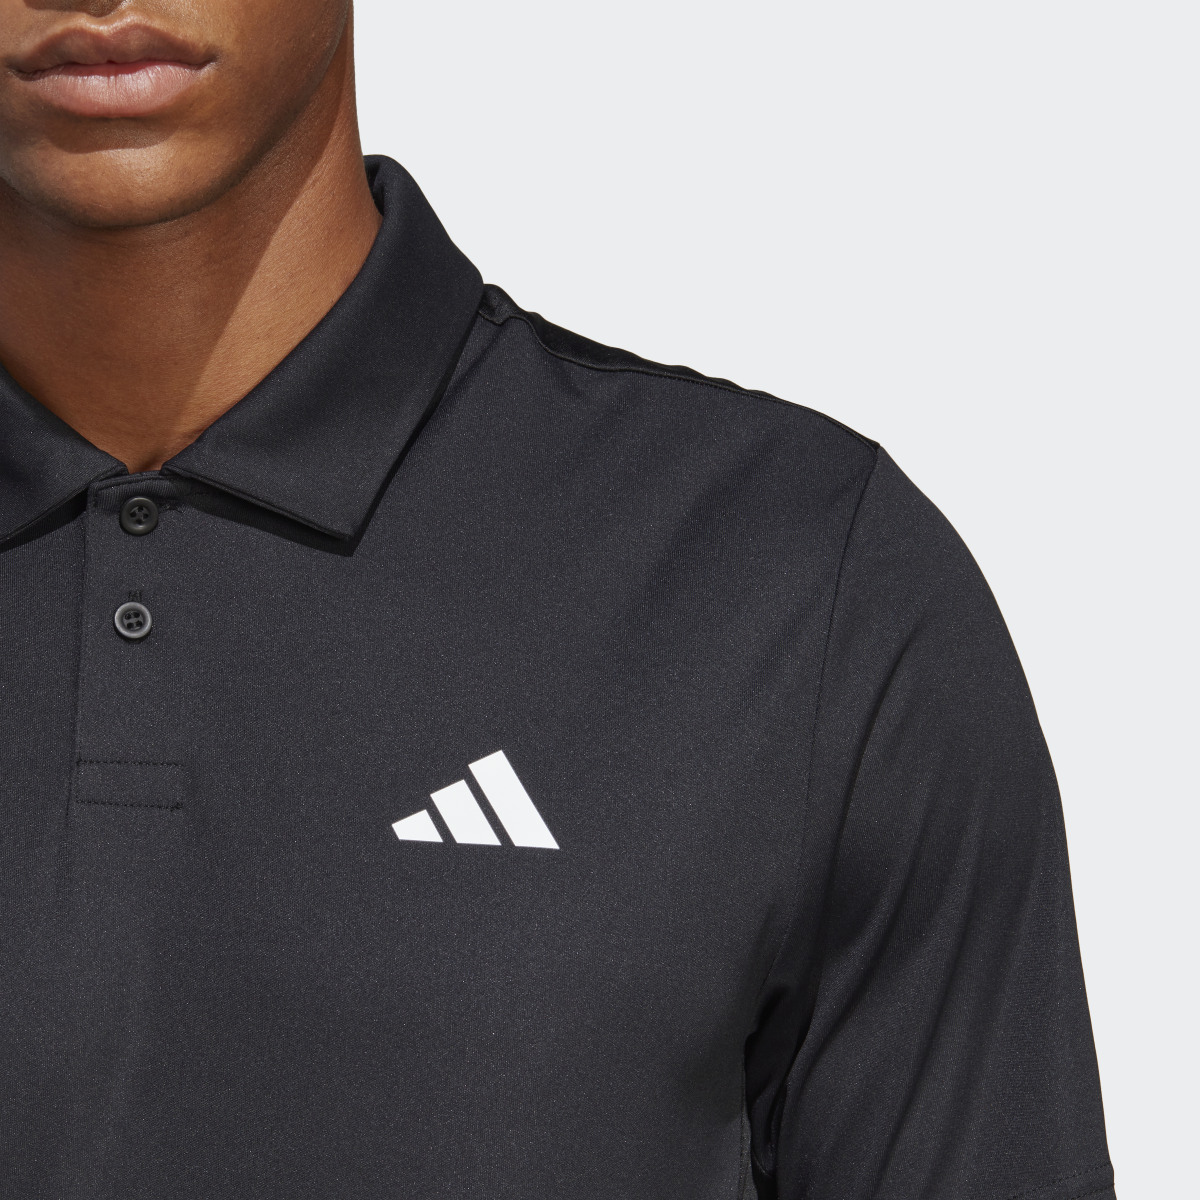 Adidas Club Tennis Poloshirt. 6